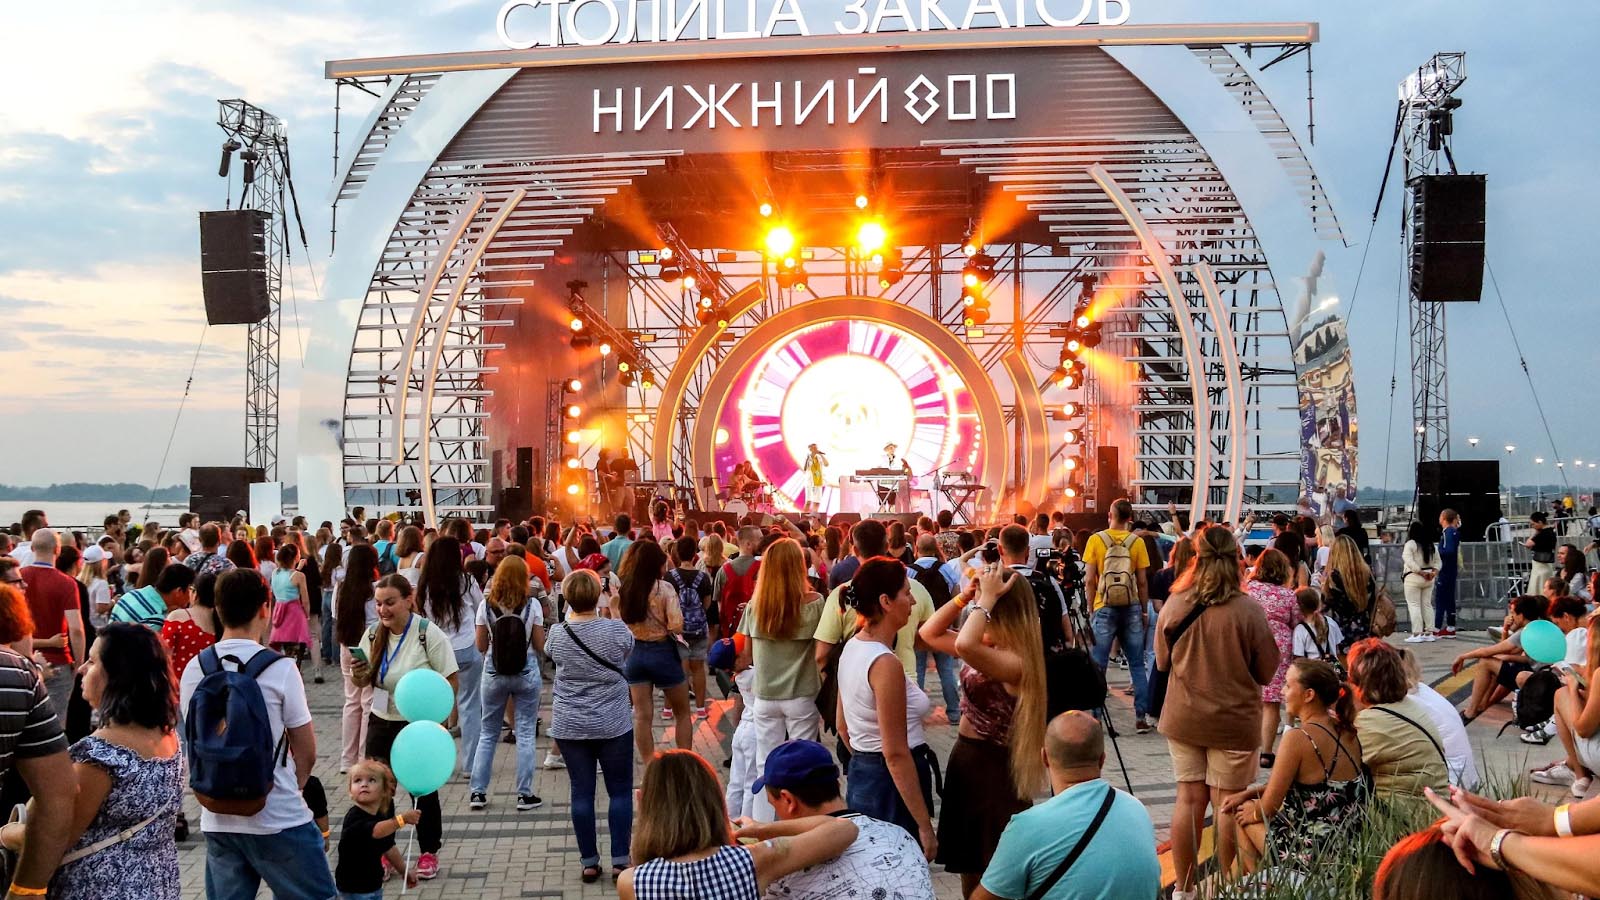 Фестиваль «Столица закатов» в Нижнем Новгороде